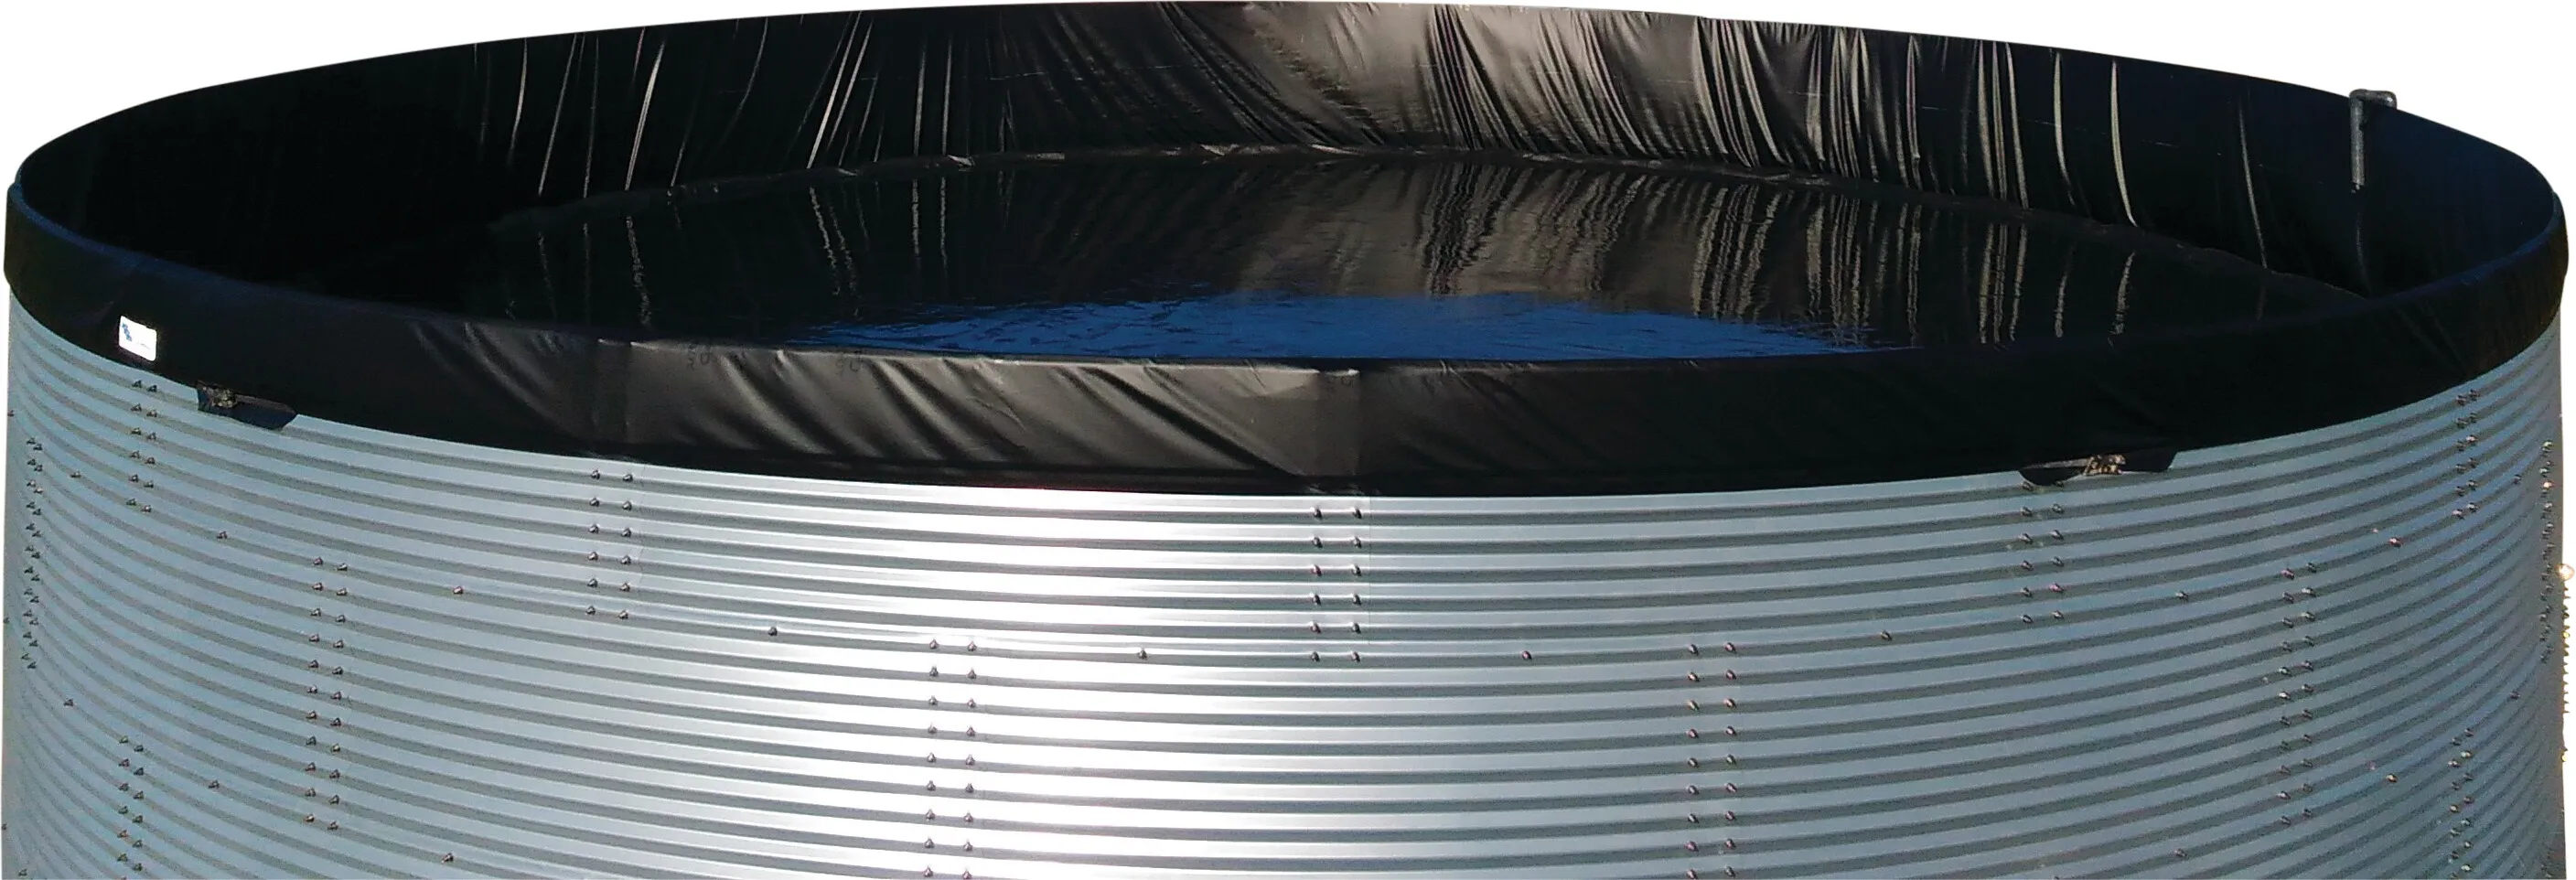 Water tank steel 5000ltr type Aquaculture/WSWAVC 2.01 x 1.59m